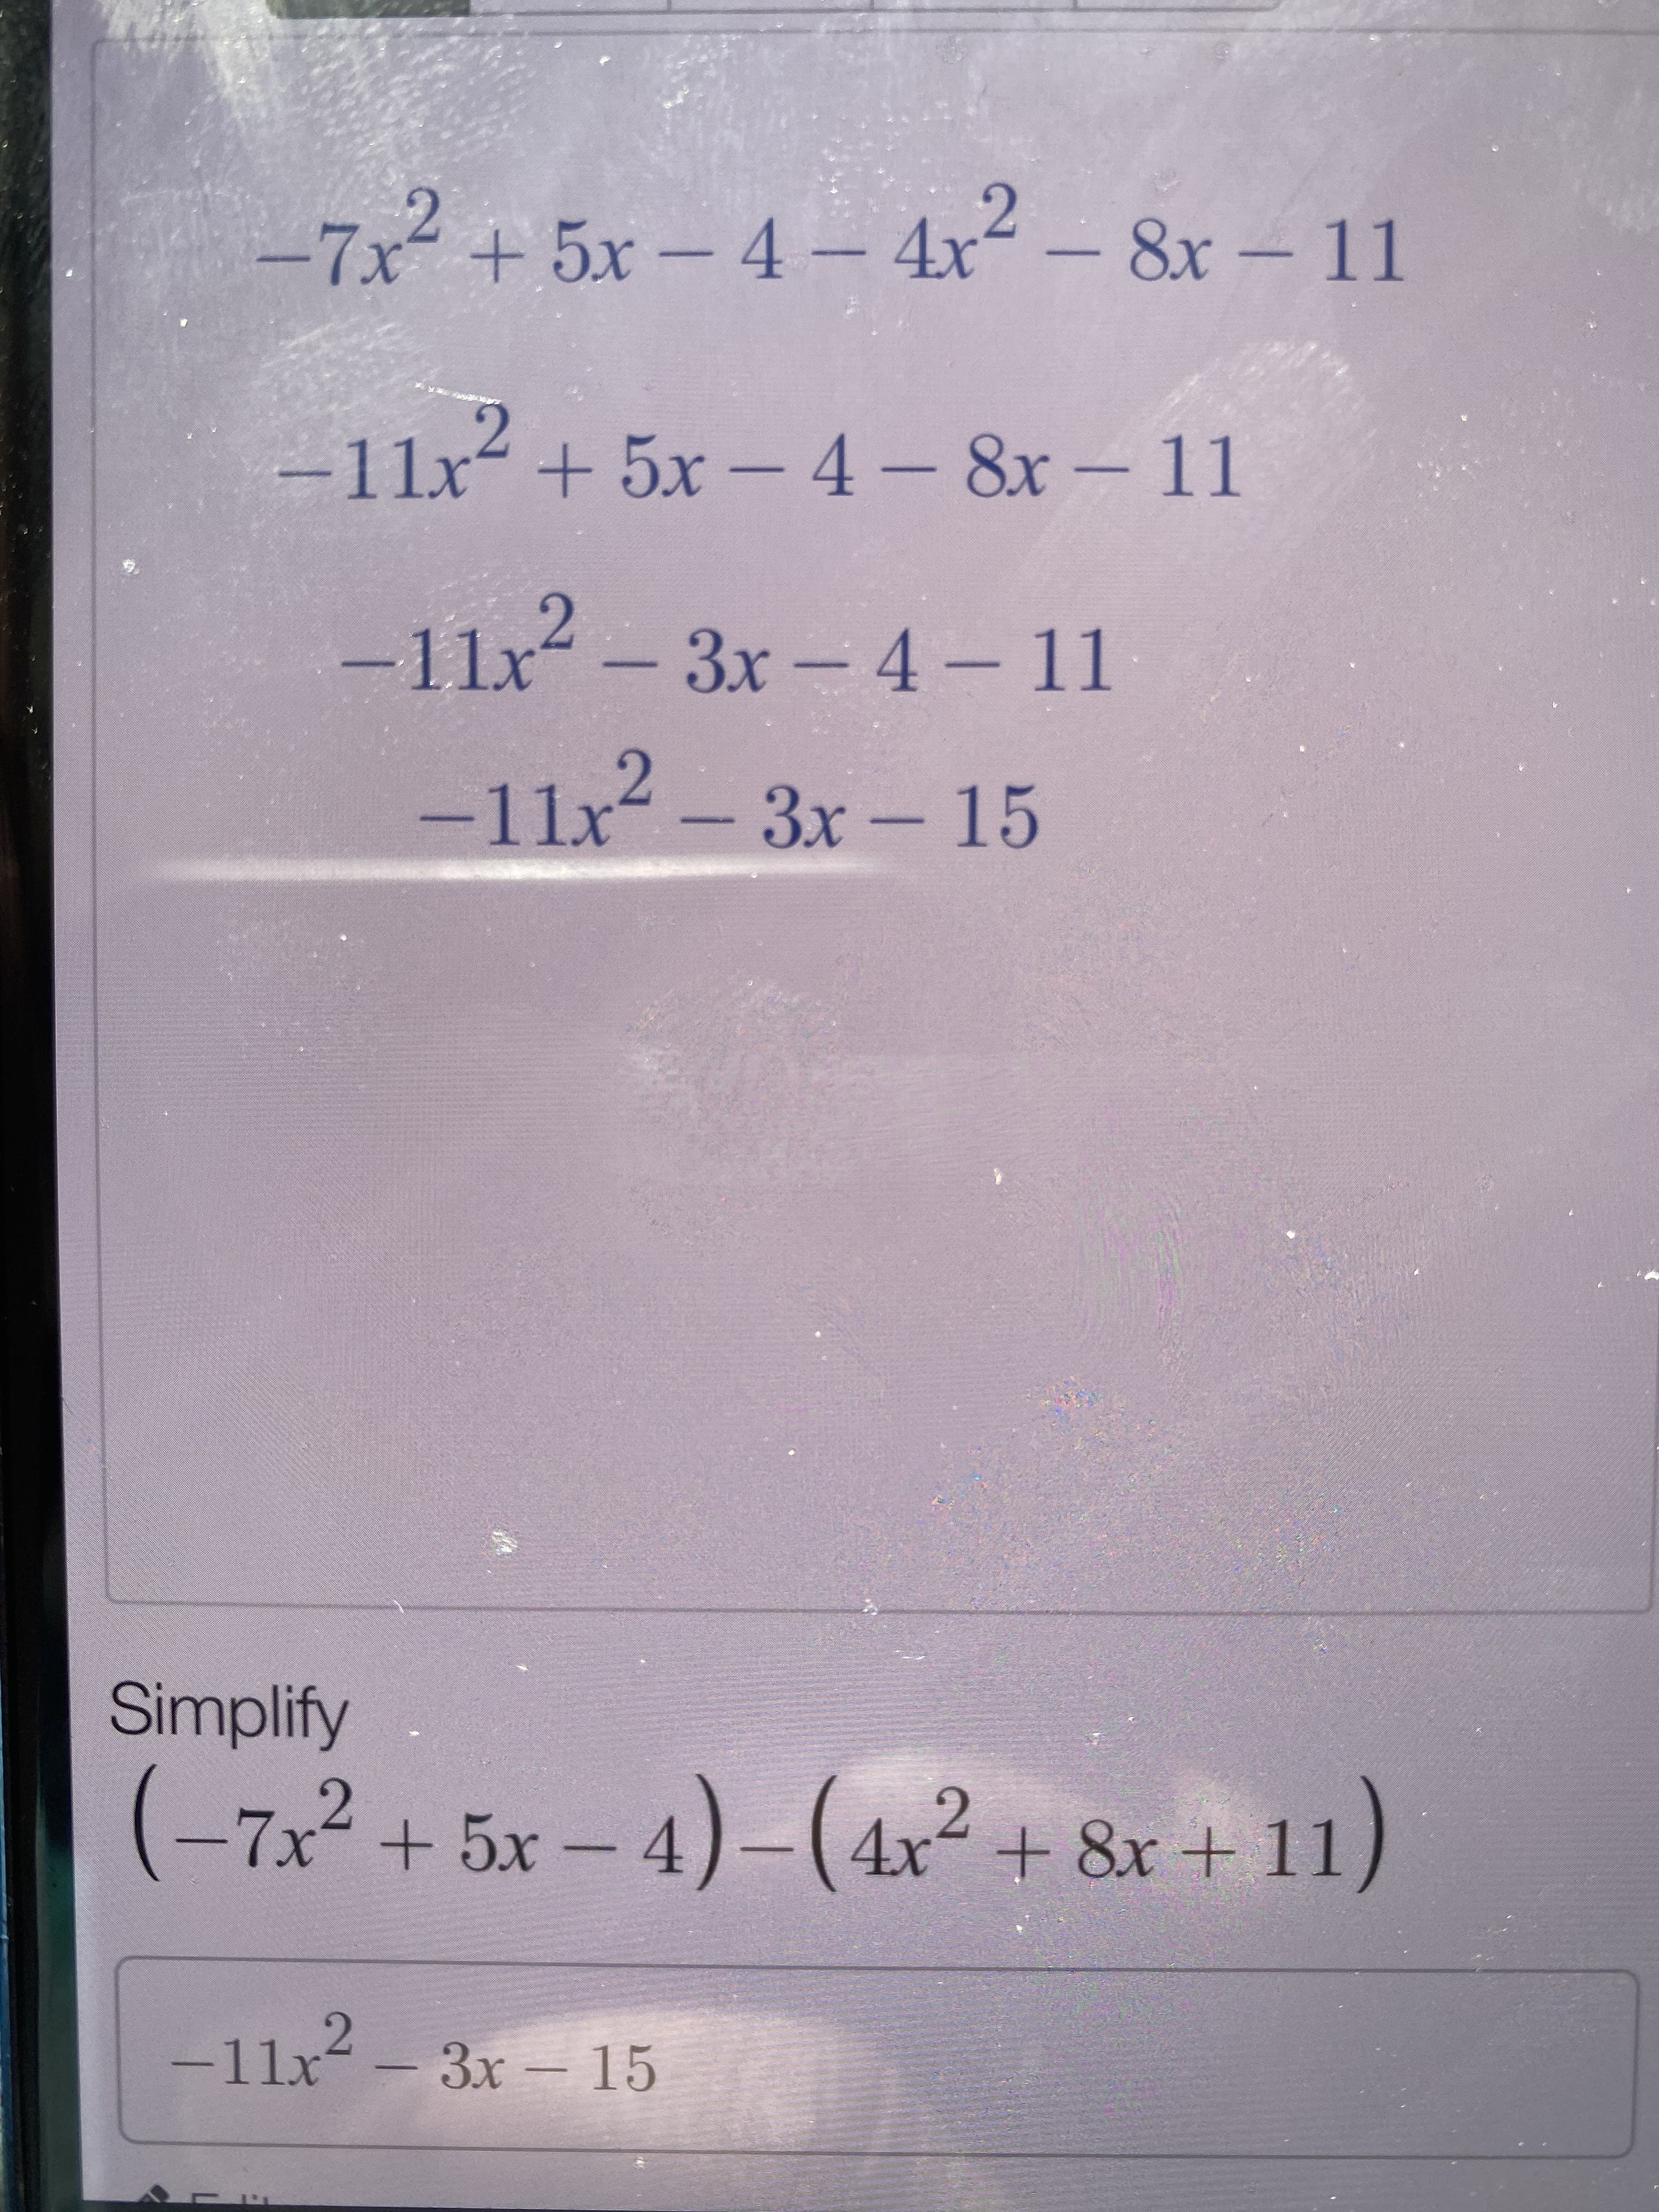 Simplify
(-7x2 + 5x - 4)-(4r? + &x + 11)
-7x-+5x-
4x²+ 8x + 11
